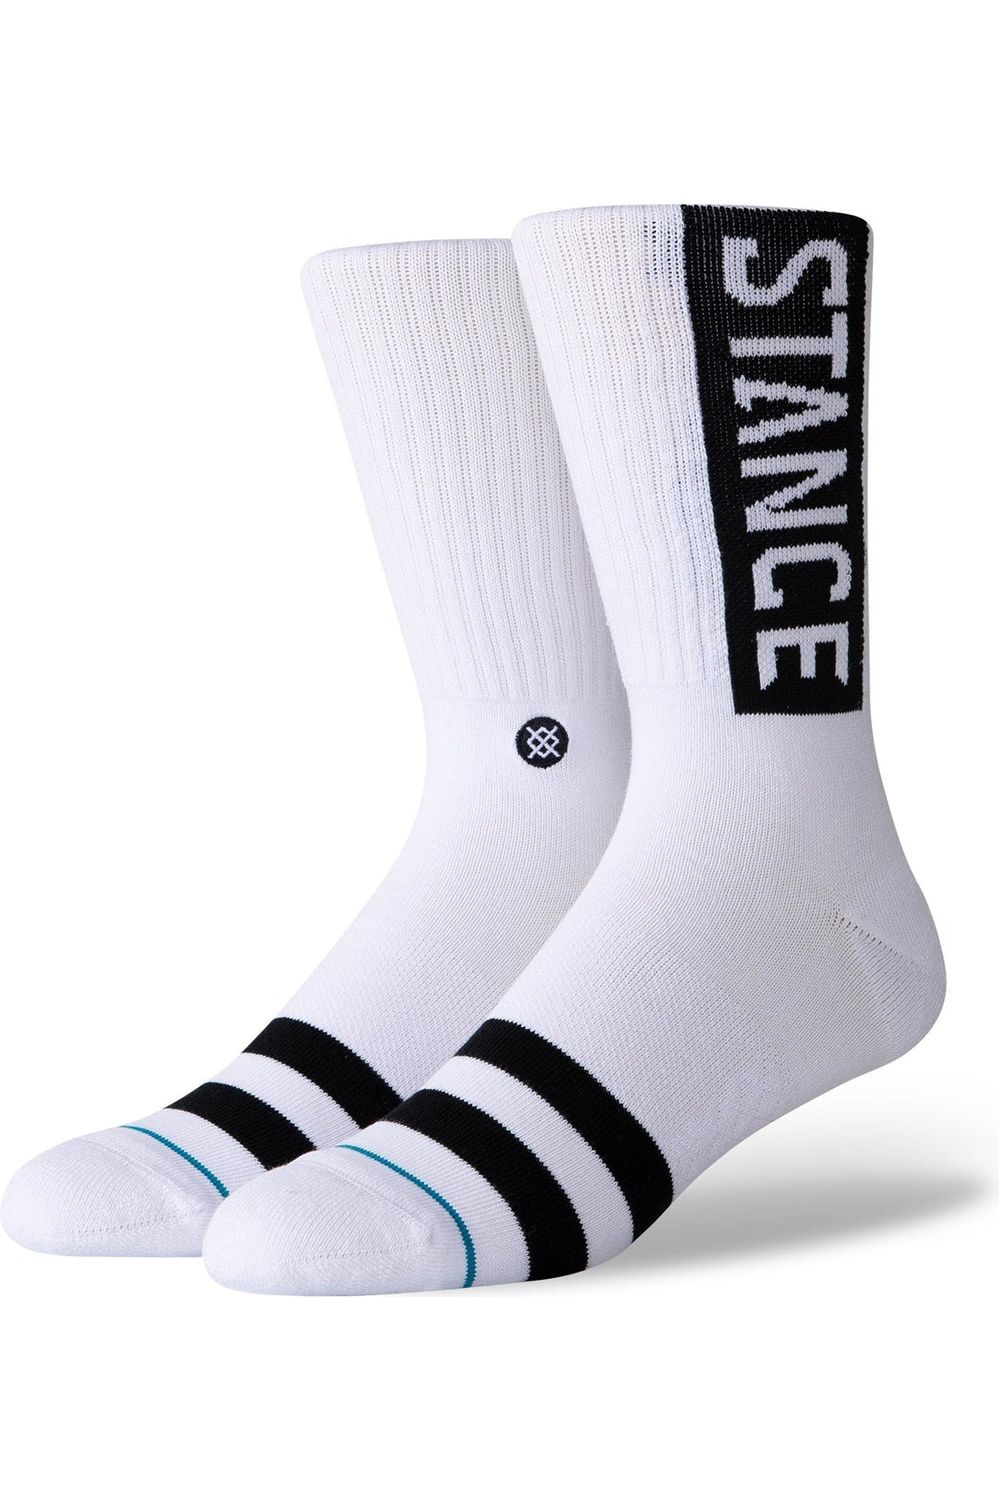 Stance Og Socks